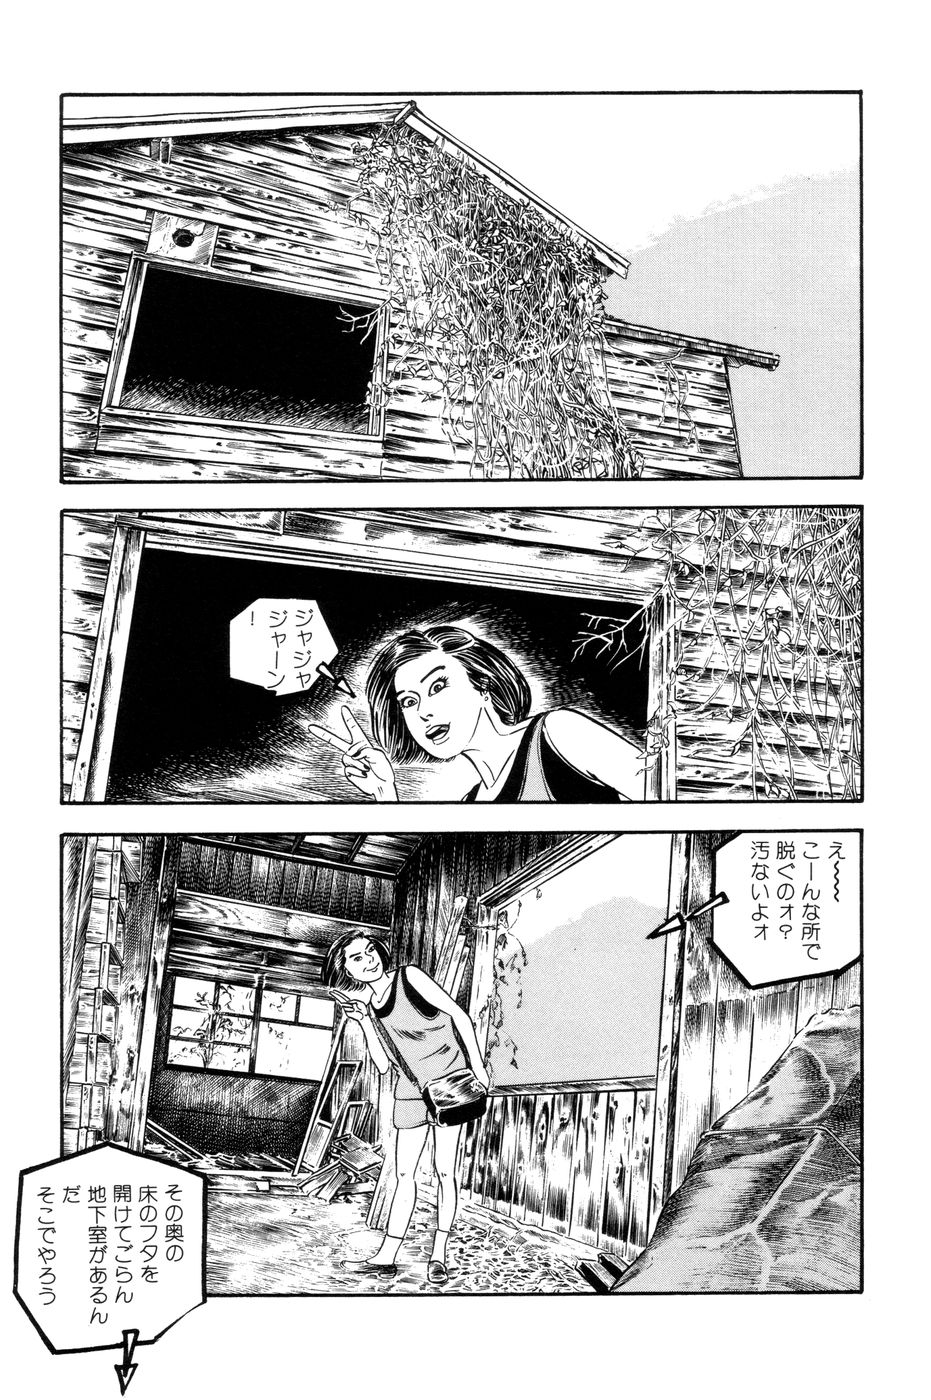 [Takashi Ishii] Maraque page 16 full